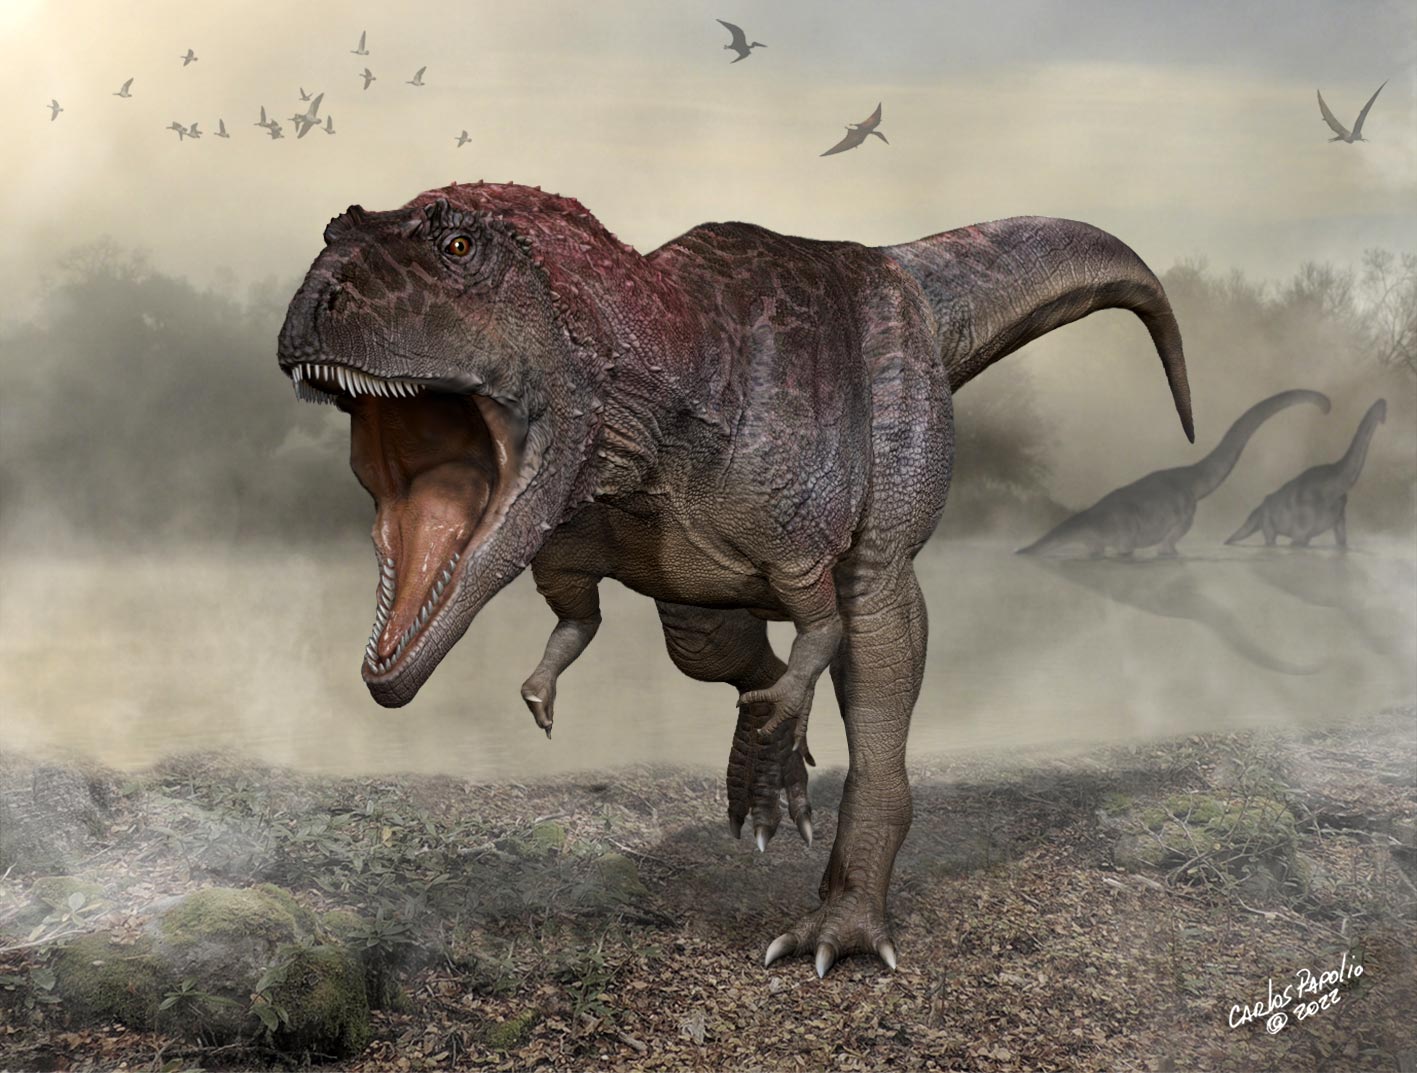 Découvrez un nouveau dinosaure carnivore géant avec des bras minuscules comme T. rex